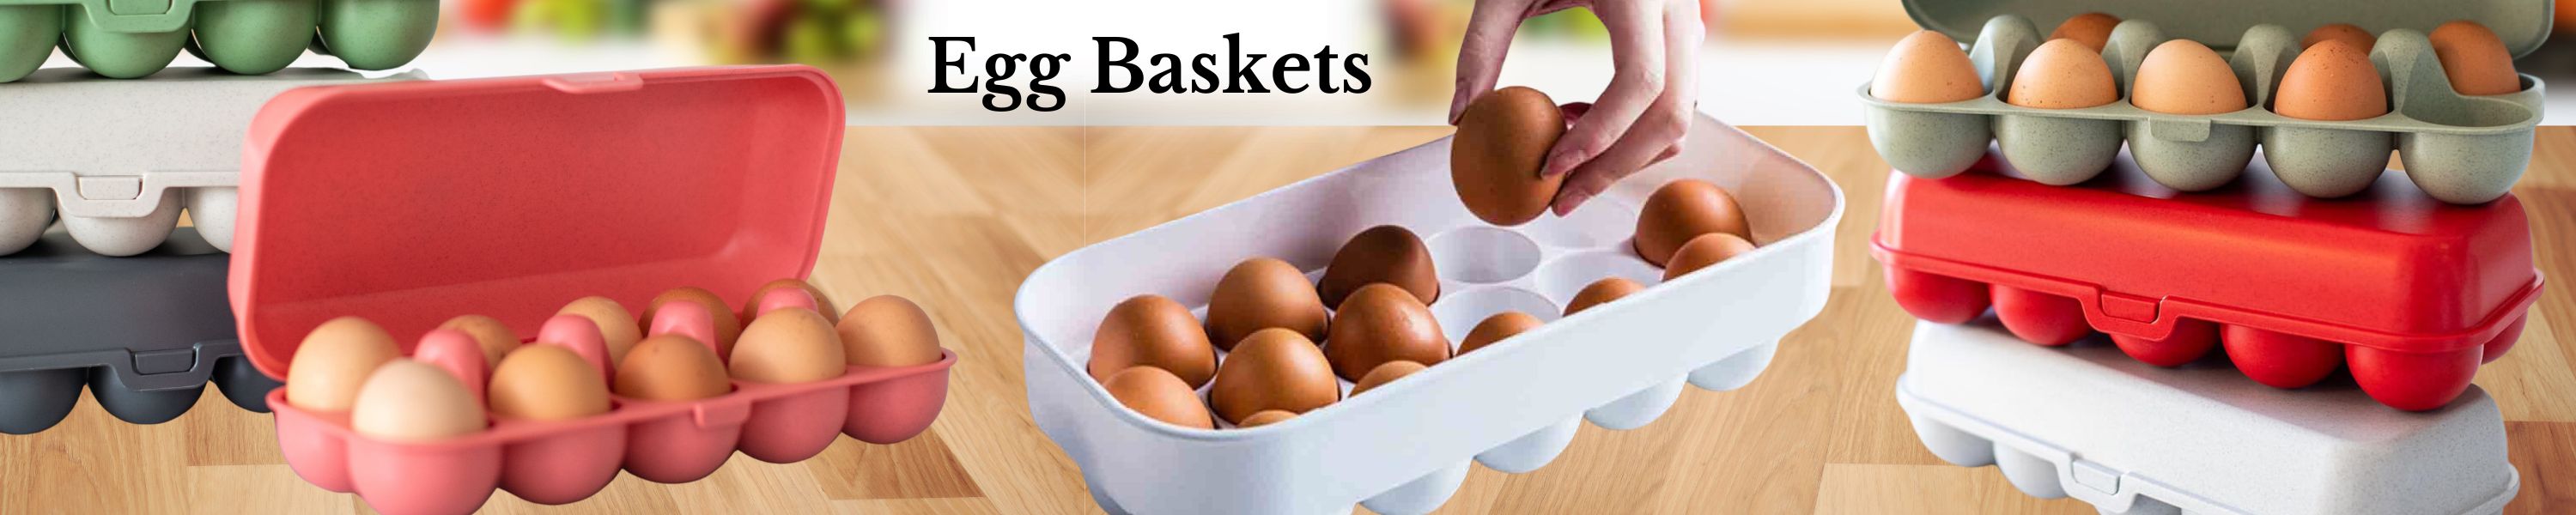 Egg Baskets